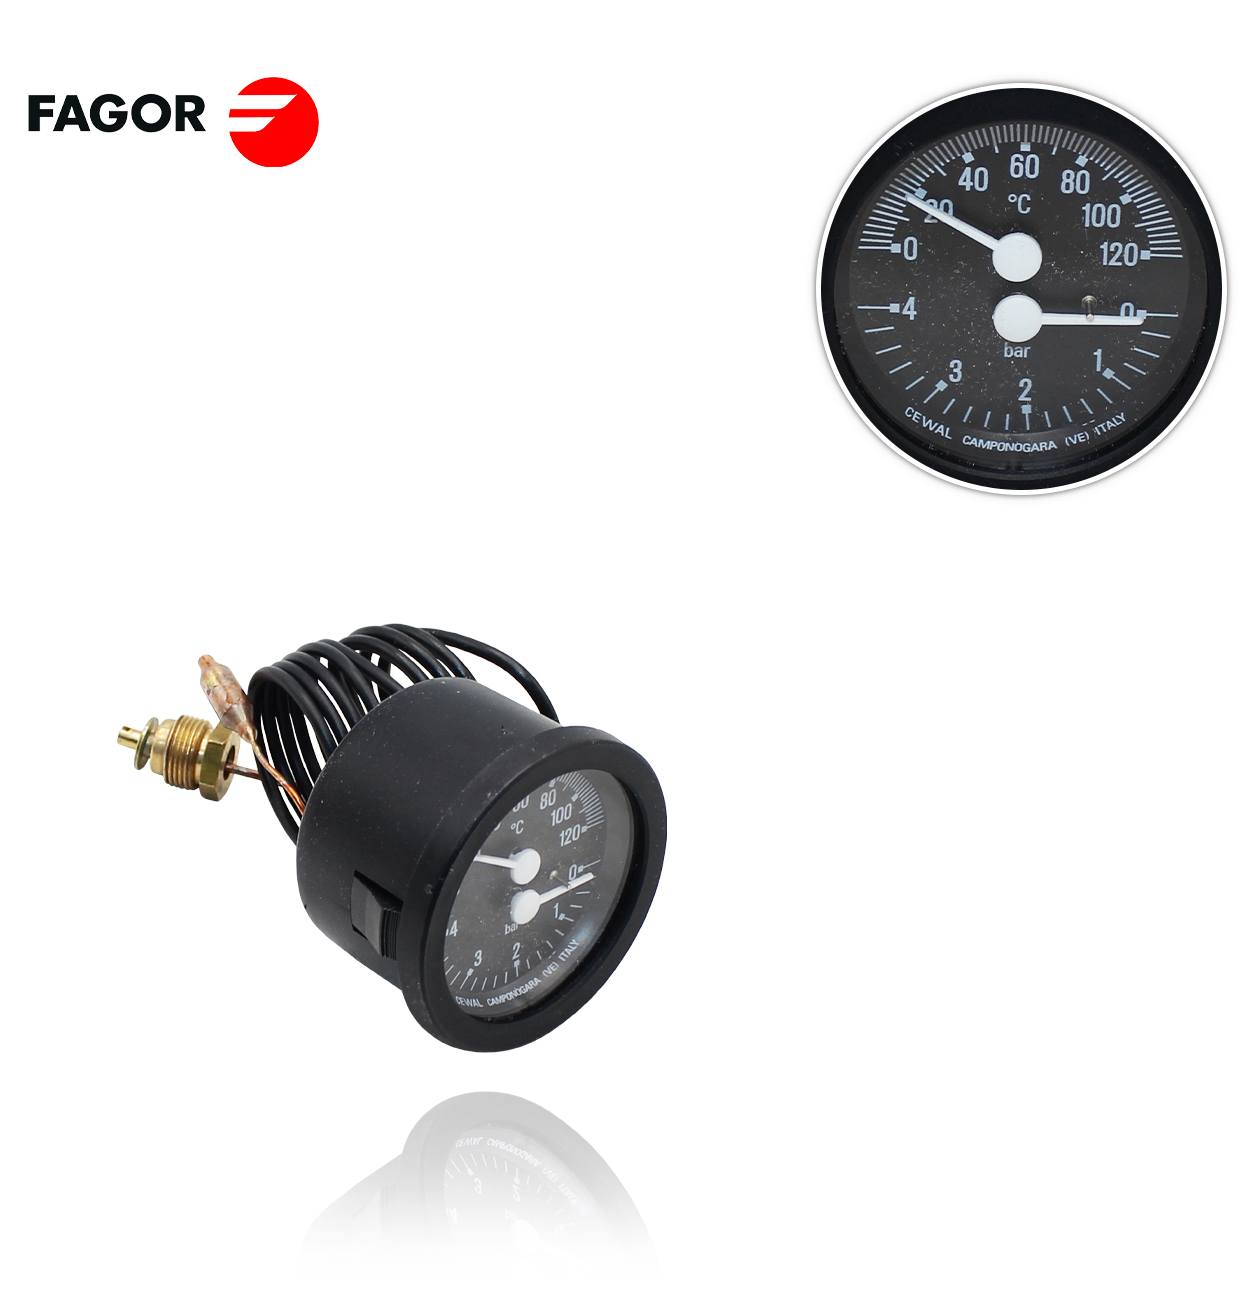 TERMOHIDROMETRO FAGOR FEB20E- FA20 / FE20E/2B Eco Compact/ FA 20E 2N FAGOR  MU1208500